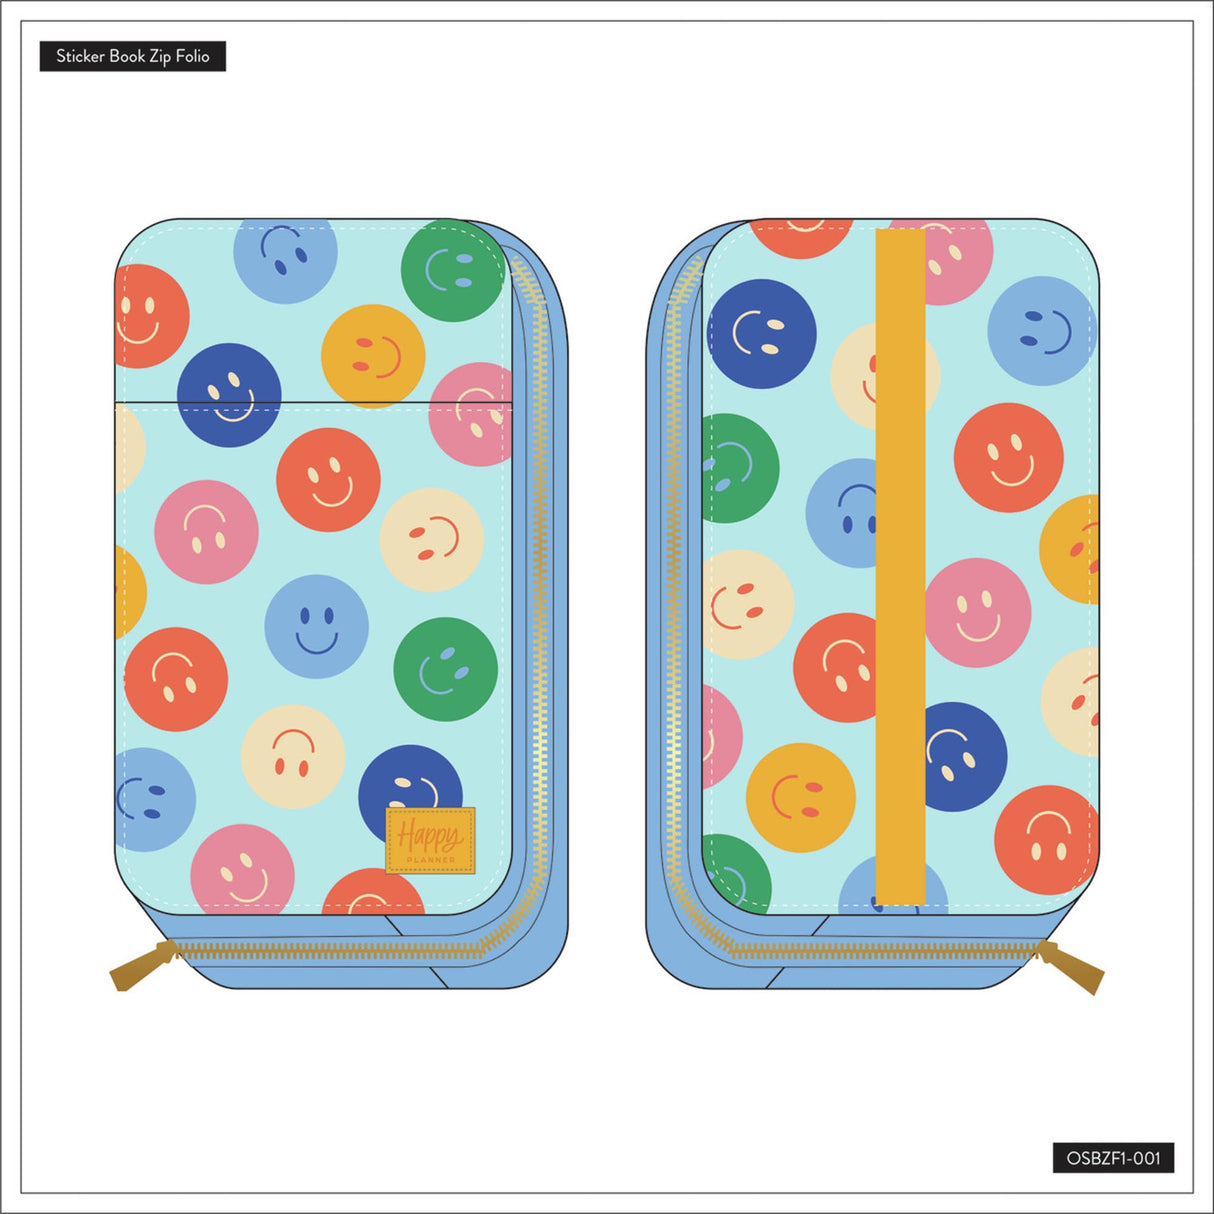 Happy Planner Super Sticker Book Zip Folio front back designs